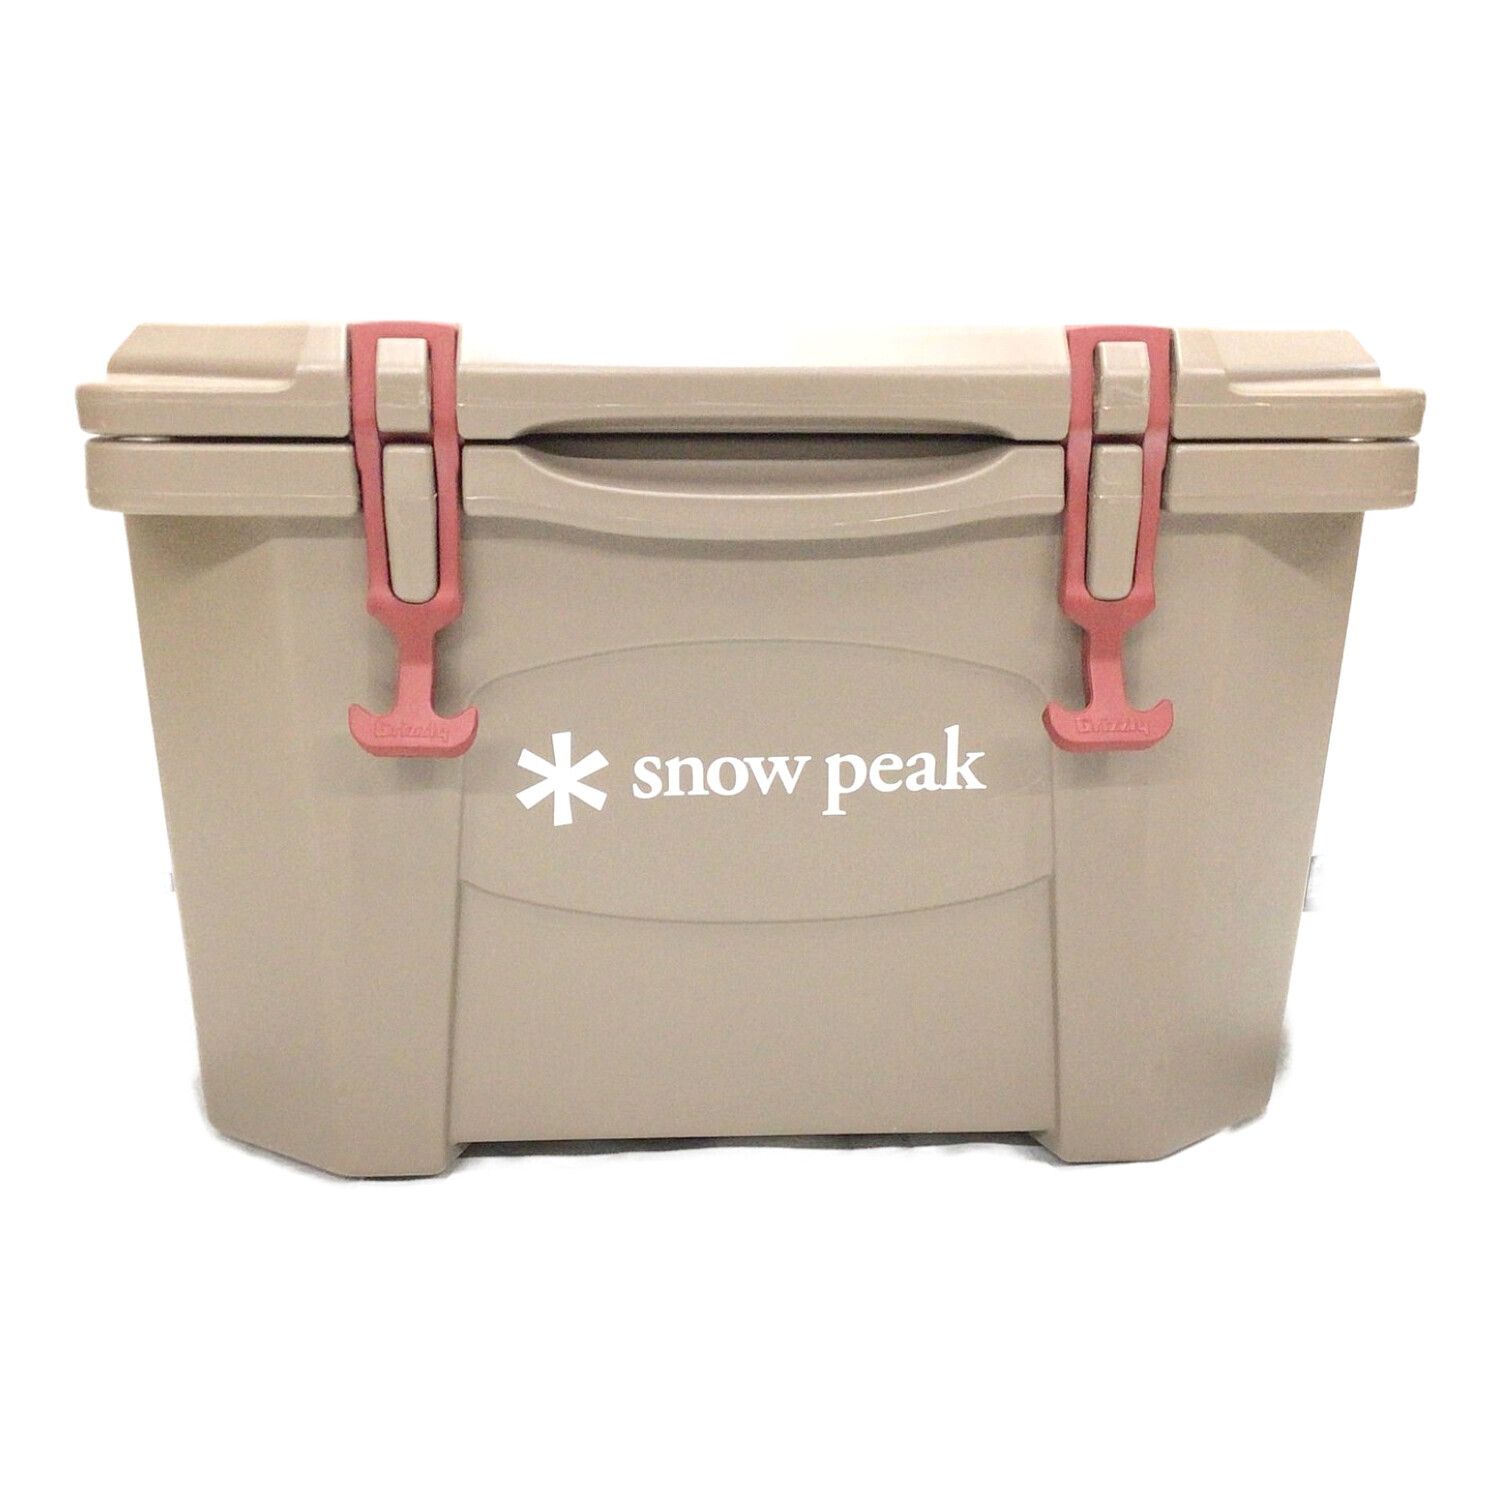 snow peak×Grizzly クーラーボックス 20QT ブラウン 廃盤品 ハード 